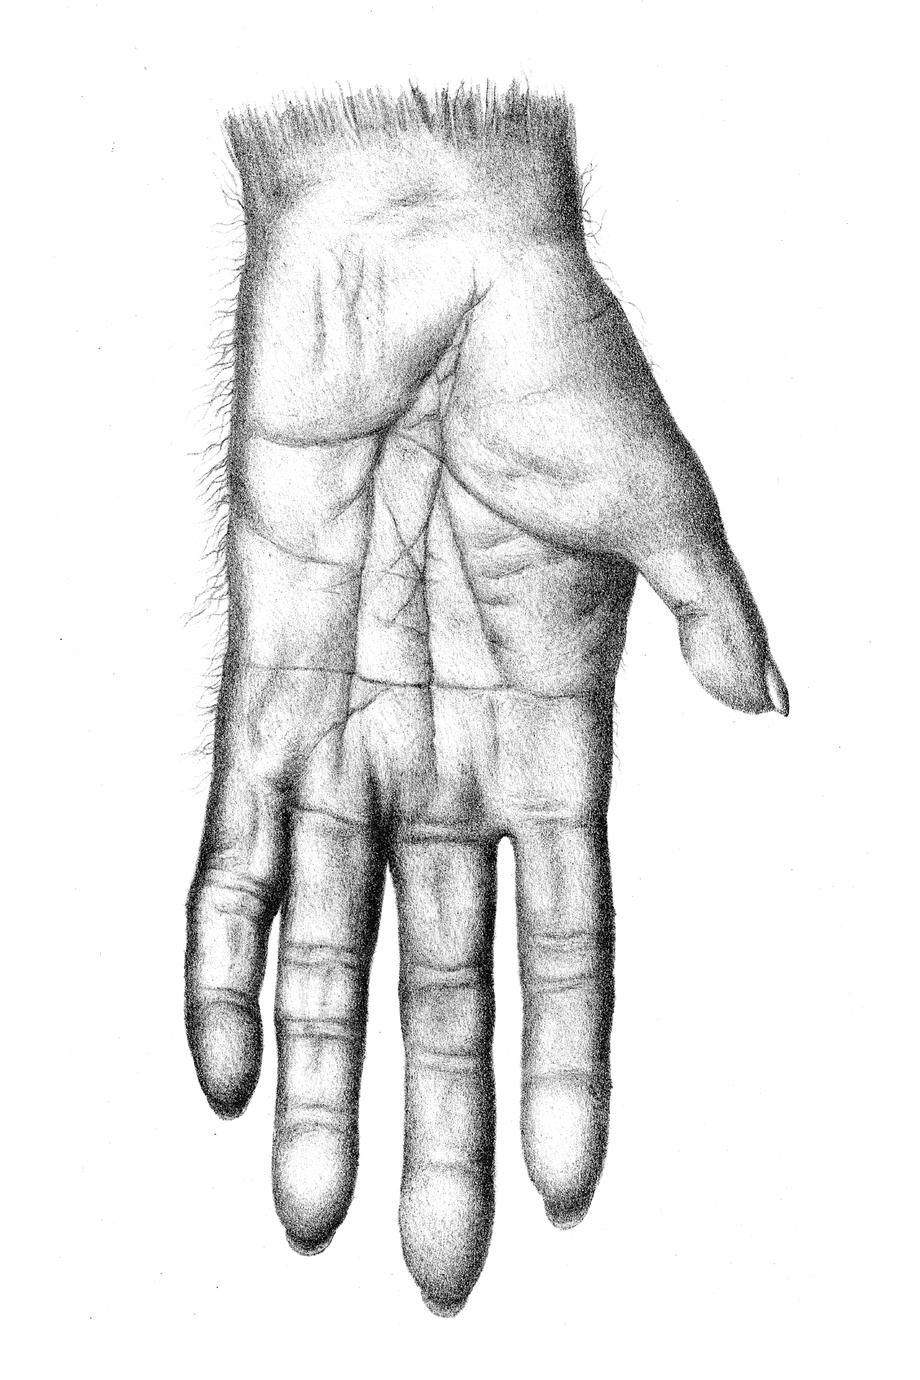 Artist rendition of a modern chimpanzee hand.